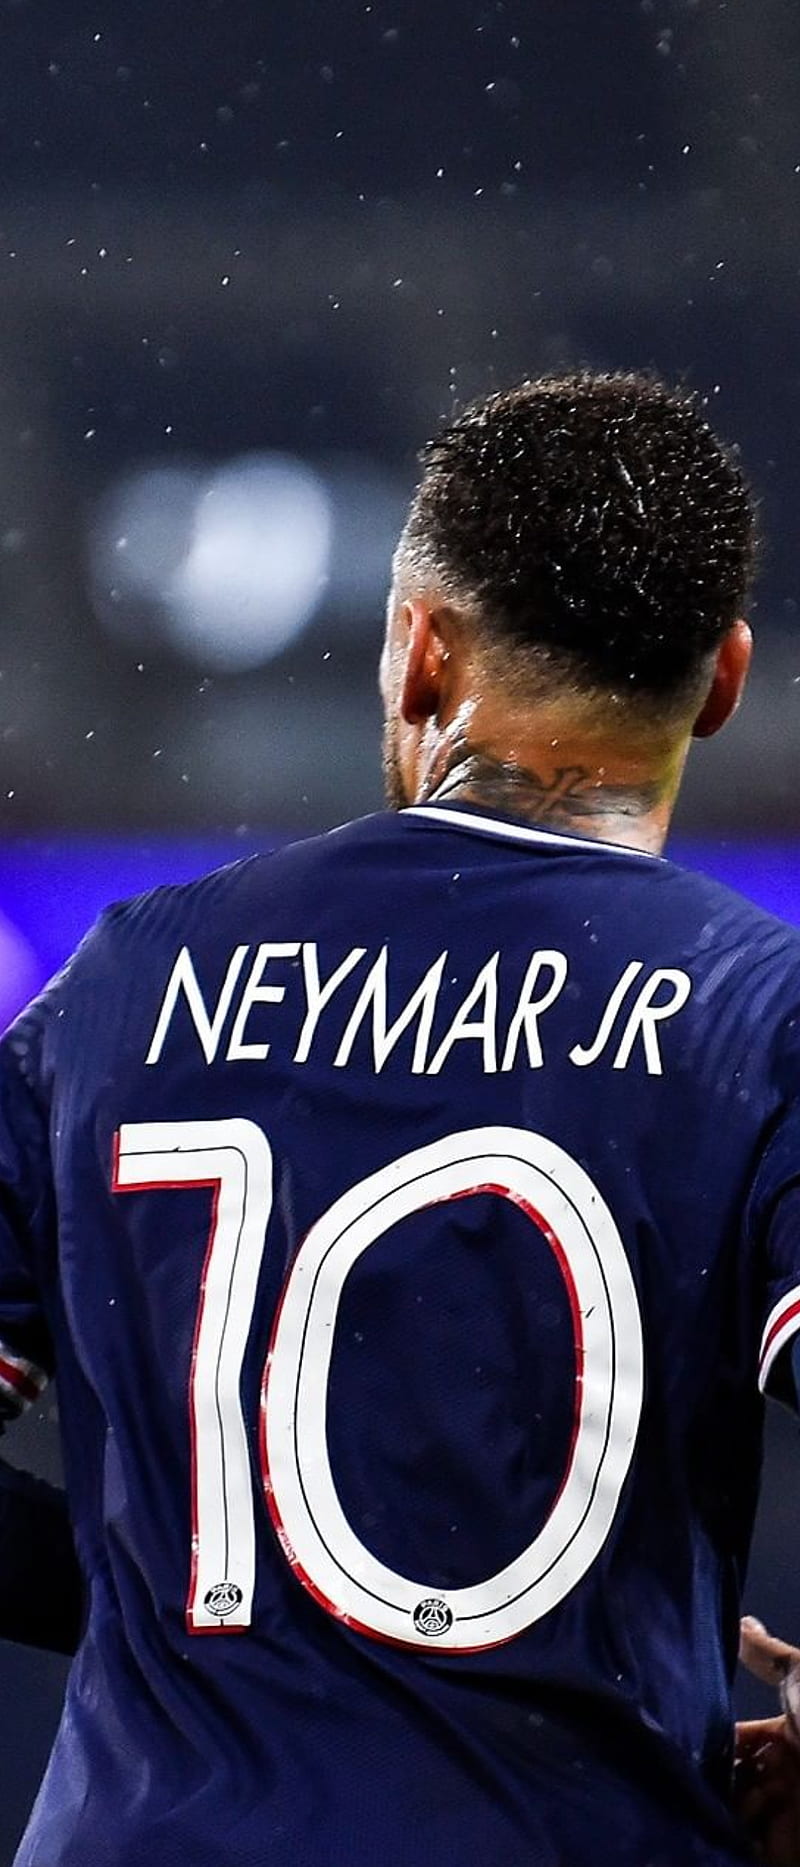 Bạn đang mong muốn một màn hình máy tính thăng hoa với hình nền Neymar Champions League? Đó là điểm đến hoàn hảo cho những người yêu bóng đá. Với hình ảnh chất lượng, bạn sẽ thấy Neymar tỏa sáng trong những trận đấu quan trọng nhất của đội tuyển Paris Saint-Germain.